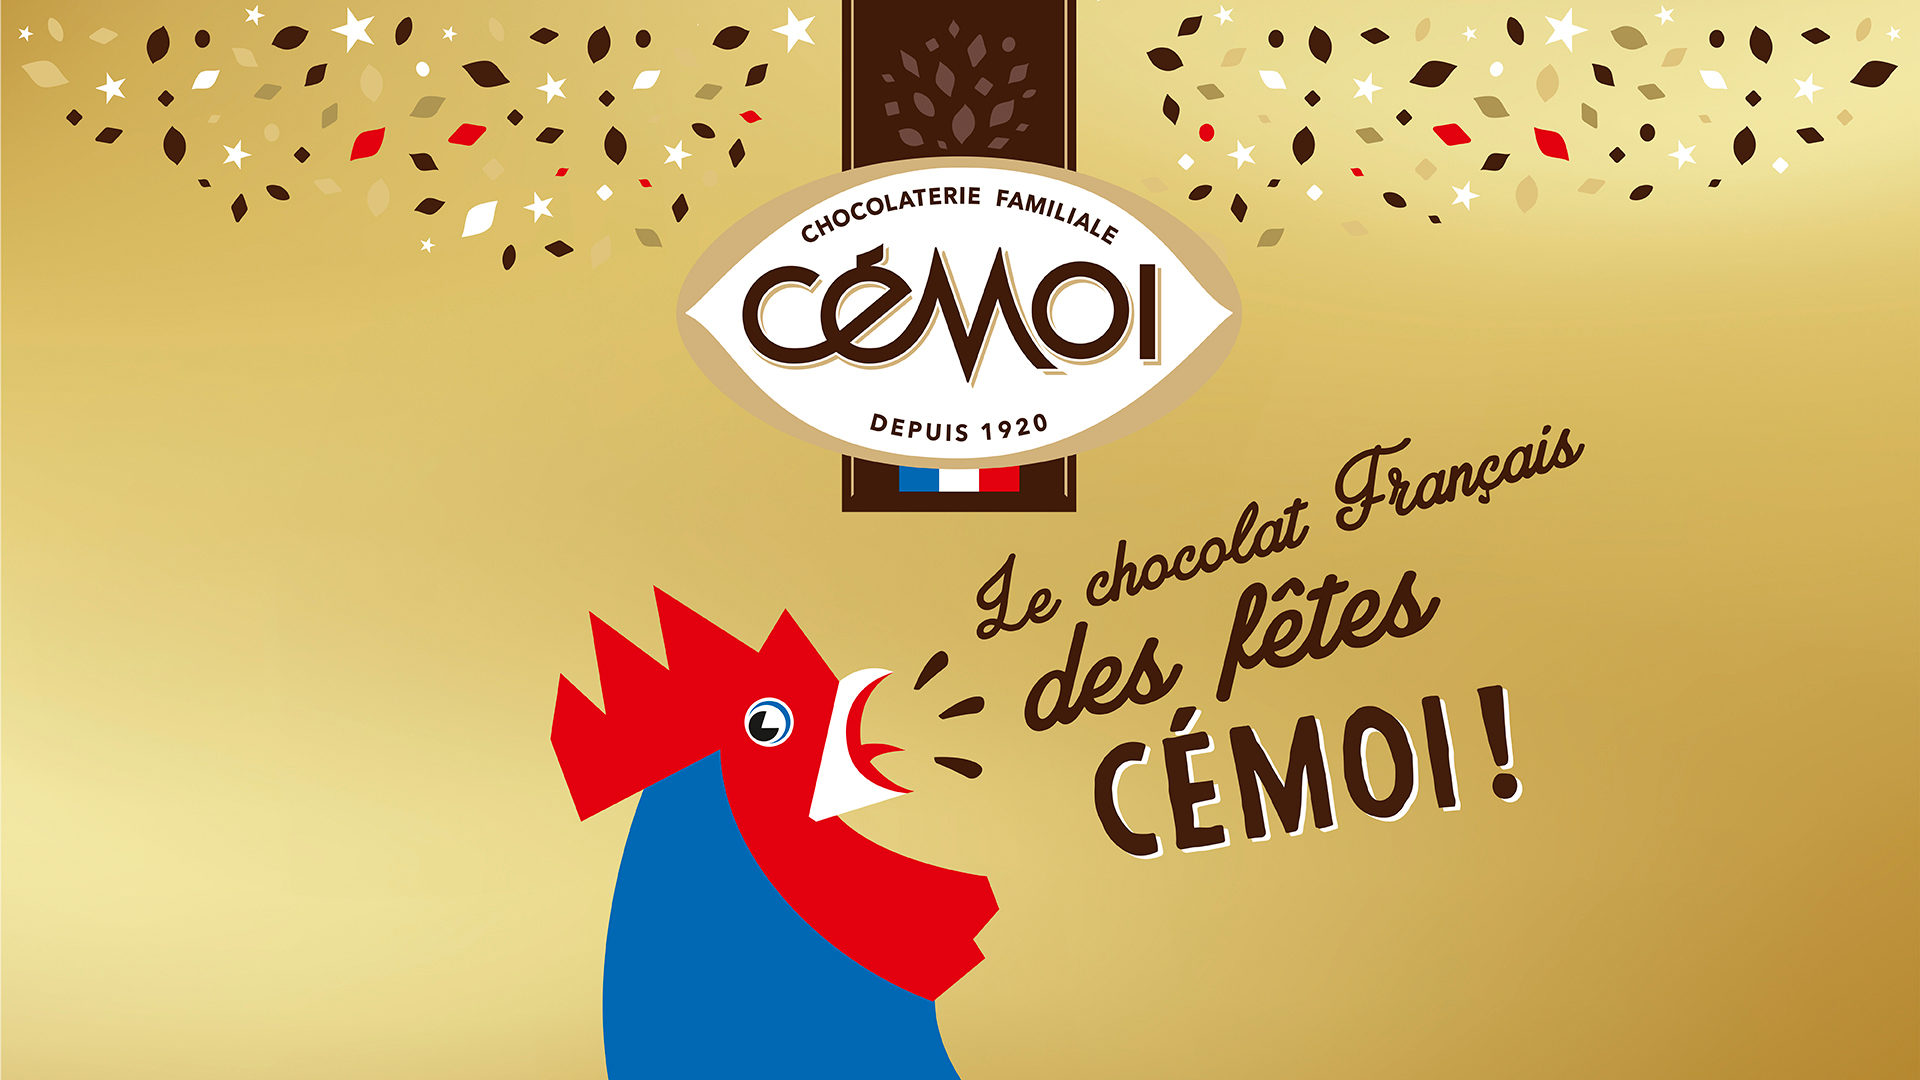 Key visual d'opération chocolats de fêtes de fin d'année montrant le coq mascotte de la marque Cémoi.